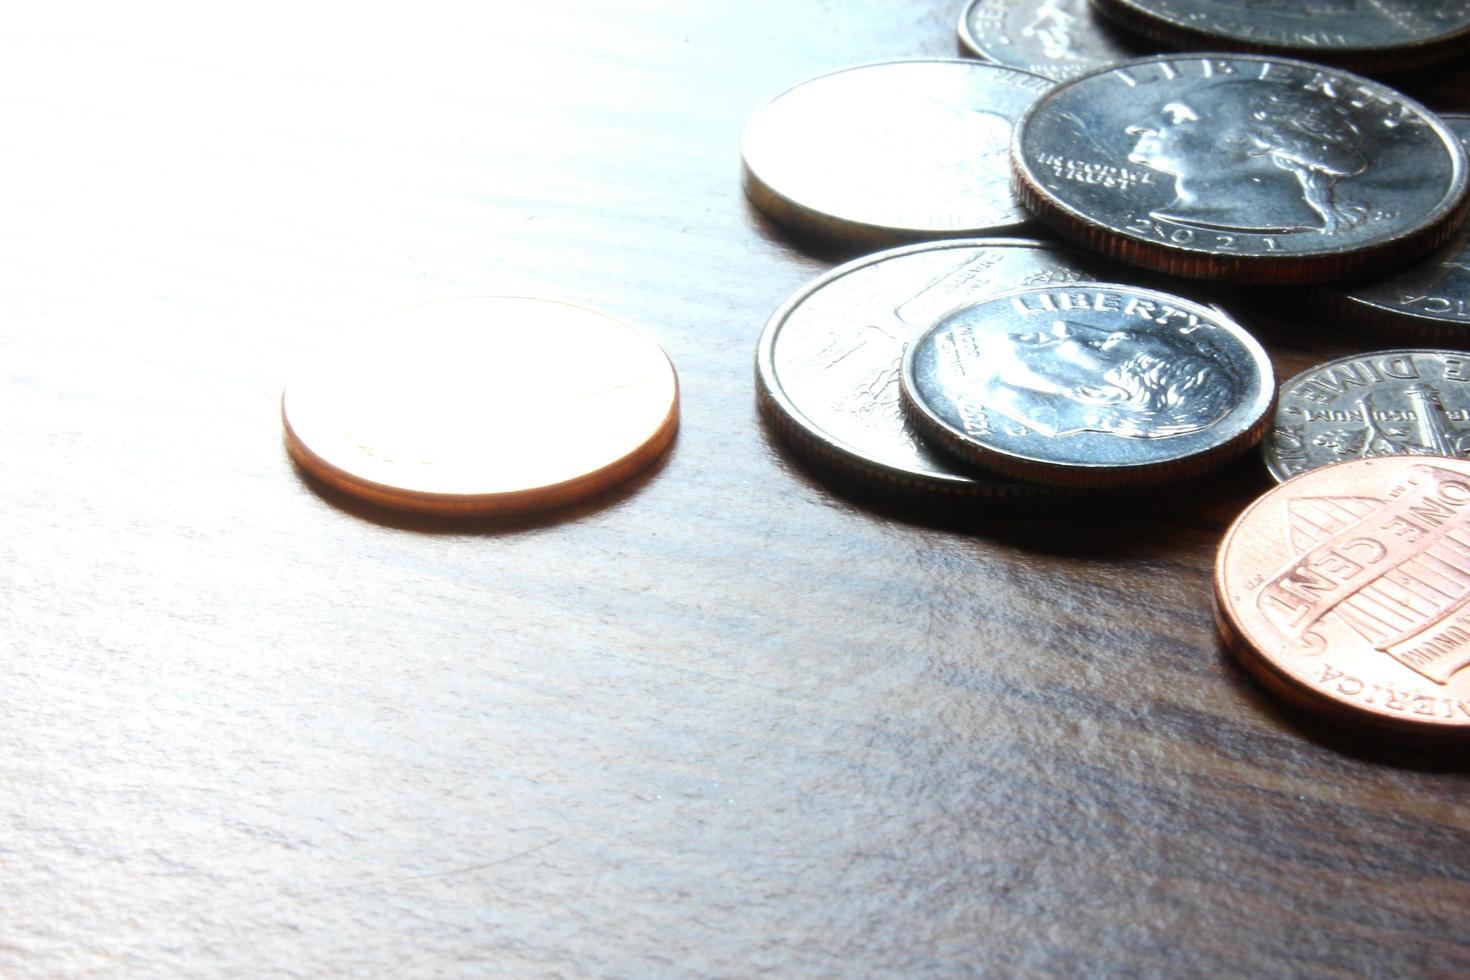 moedas de dólar espalhadas em uma mesa de madeira, foto